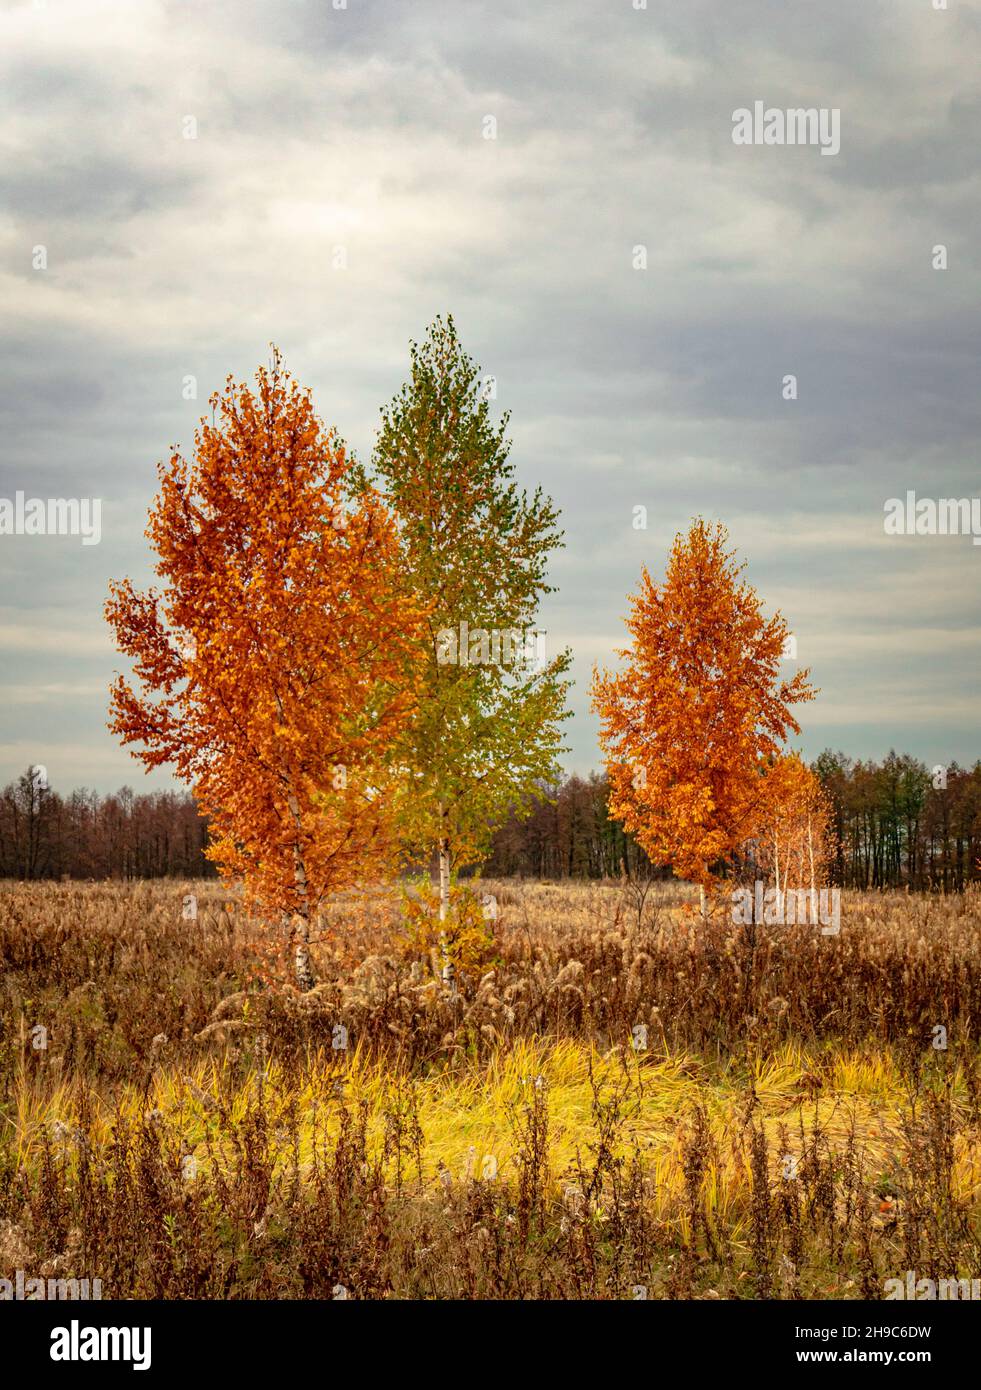 Trois oiseaux avec feuillage jaunâtre dans un champ d'automne avec herbe flétrie sous un ciel gris sombre Banque D'Images